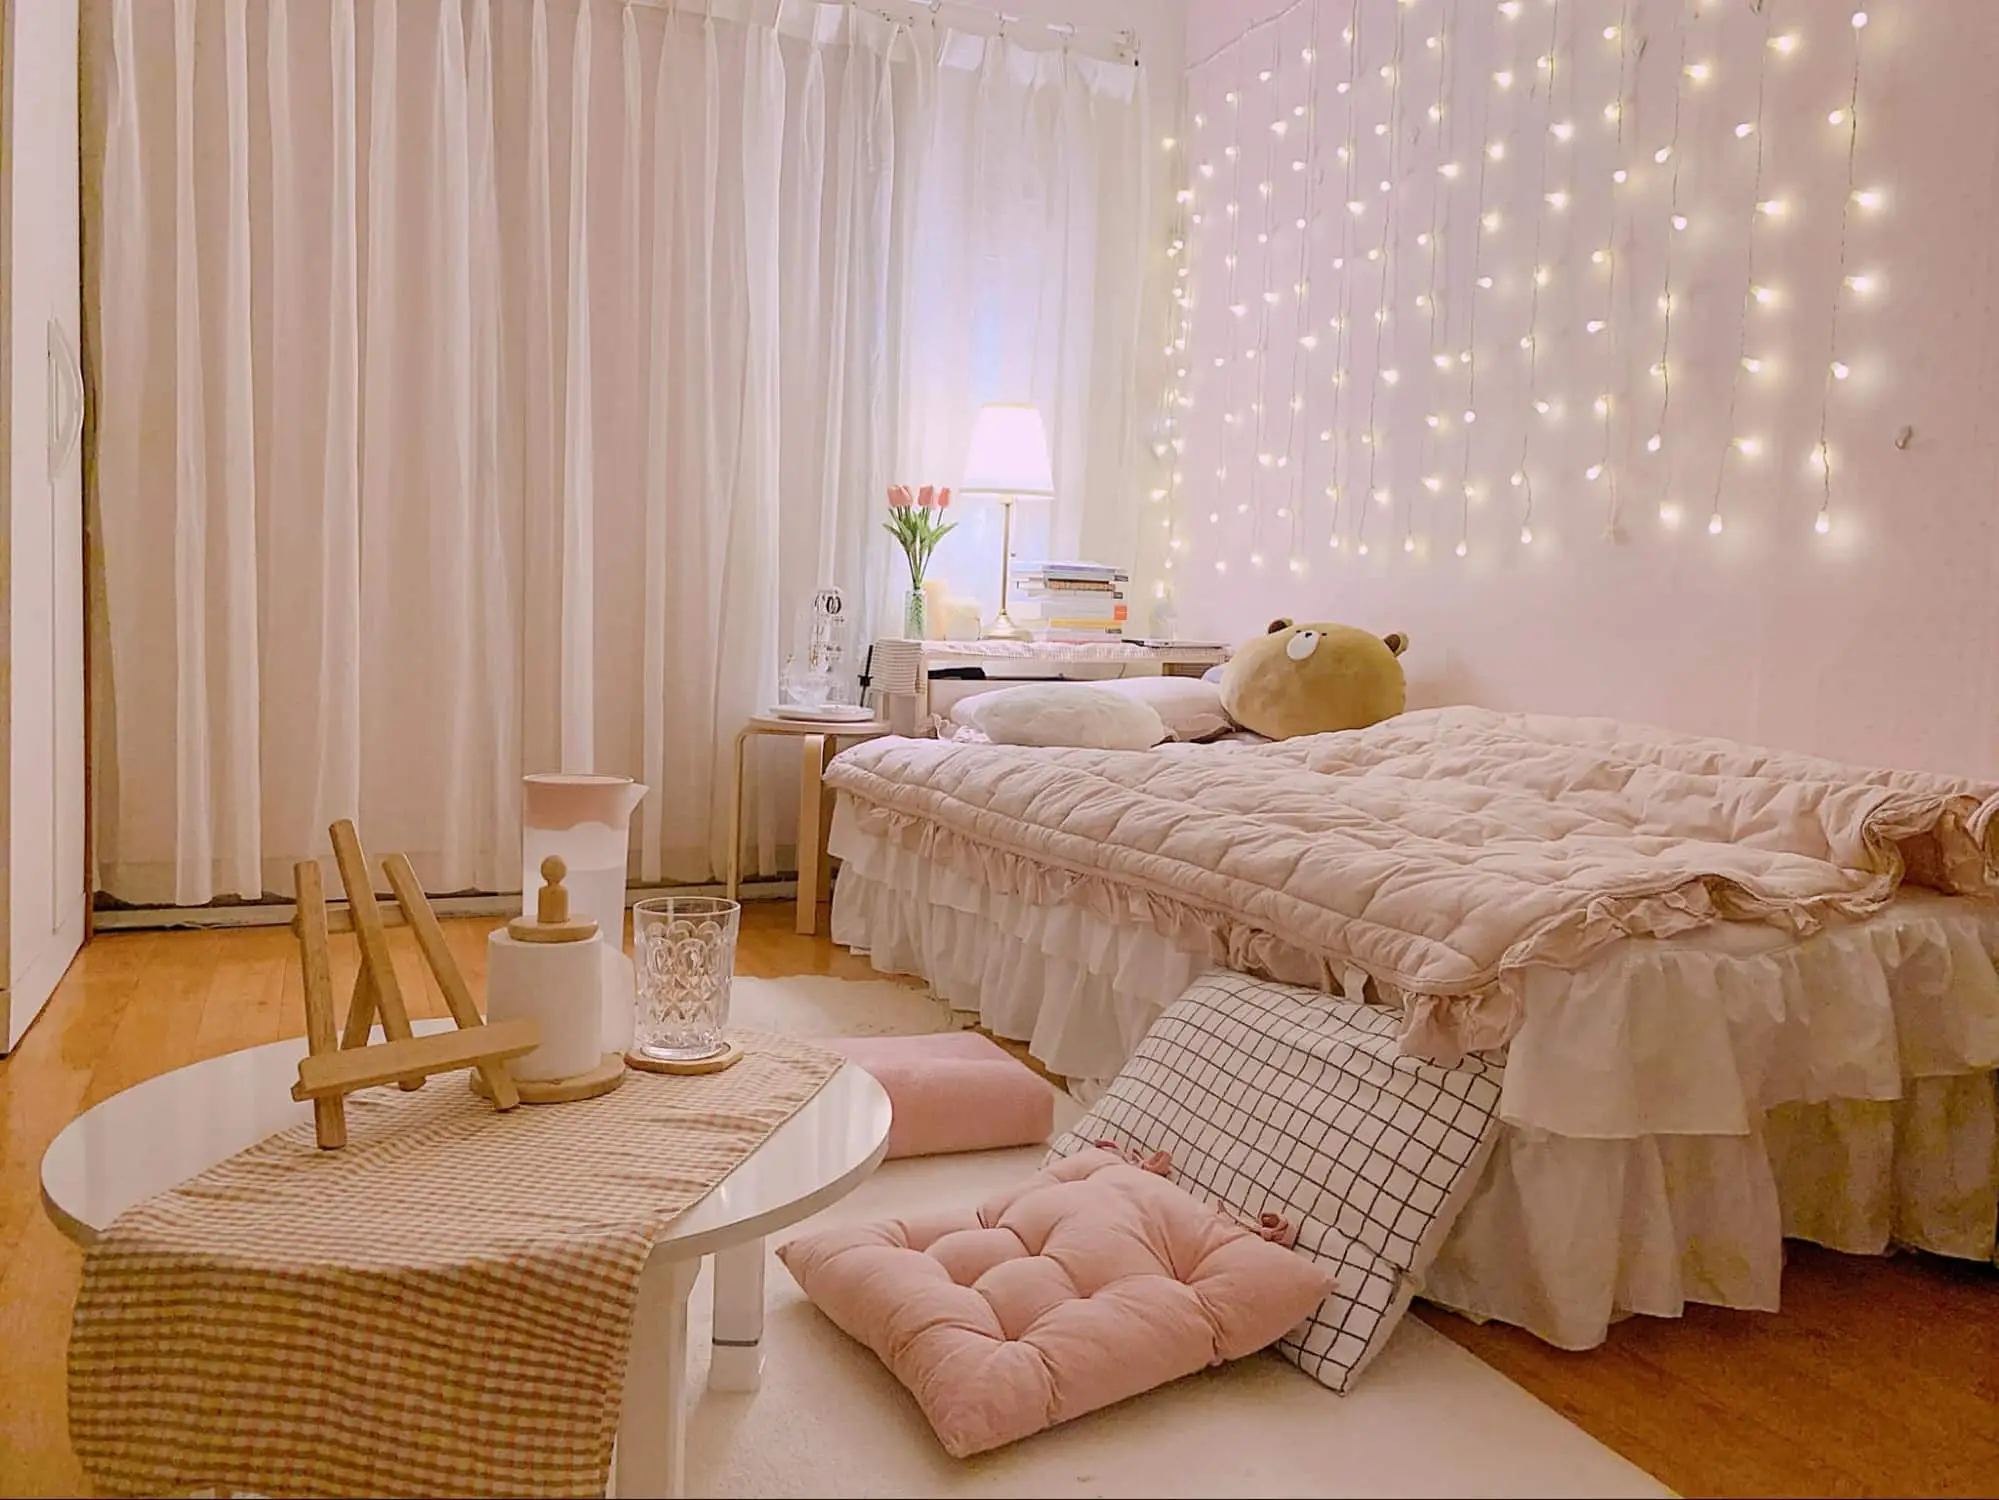 Chiêm ngưỡng mẫu decor phòng ngủ Hàn Quốc theo phong cách dễ thương